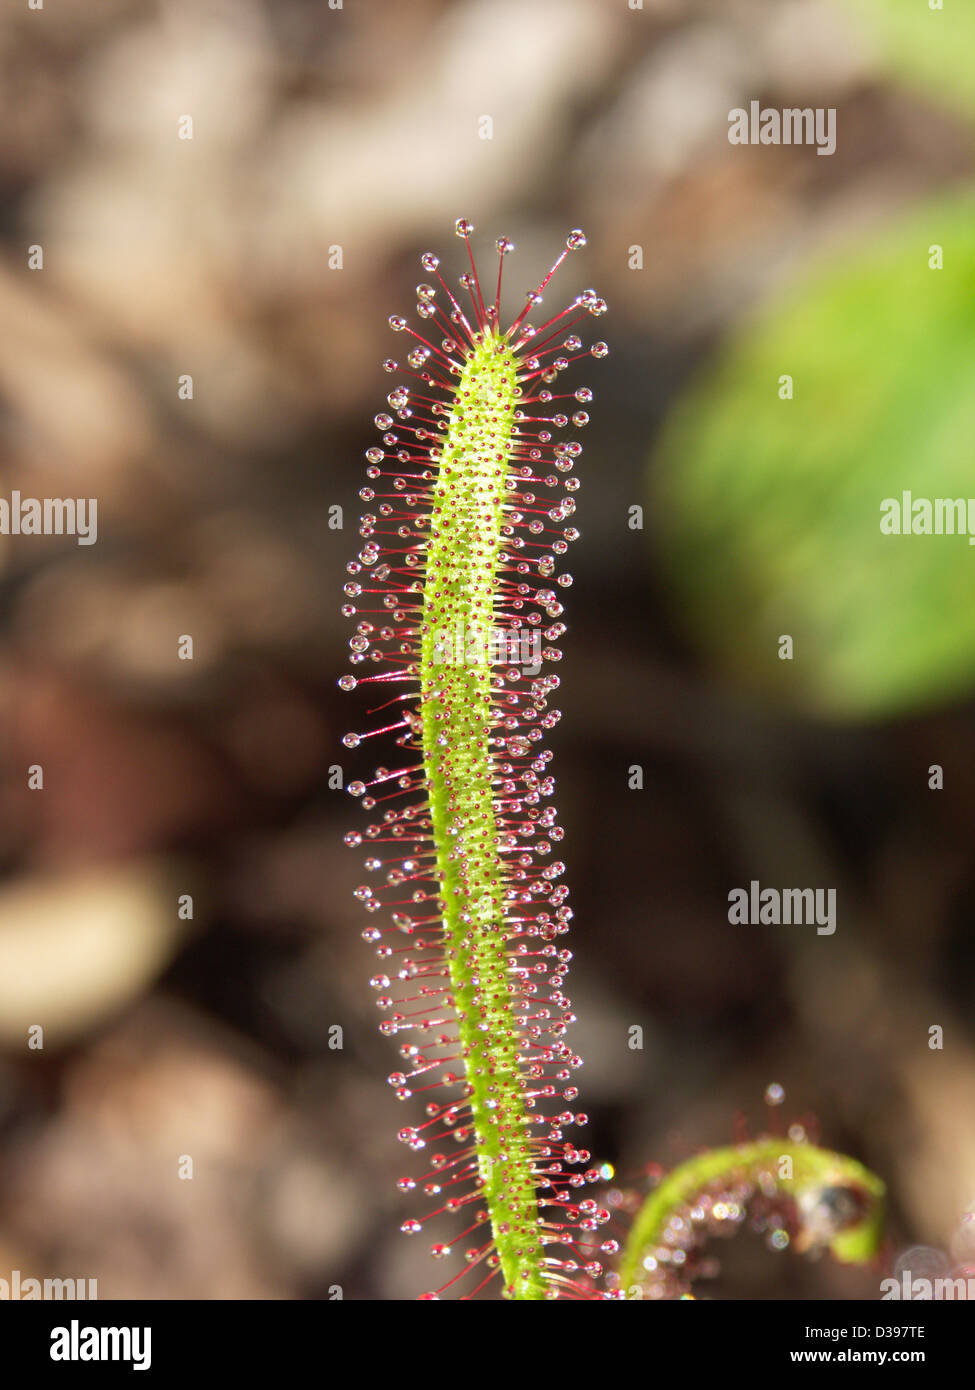 Nahaufnahme von Stamm fleischfressende Pflanze - Drosera Capensis - mit Reihen von glitzernden klebrige Blobs, die Insekten zu fangen Stockfoto